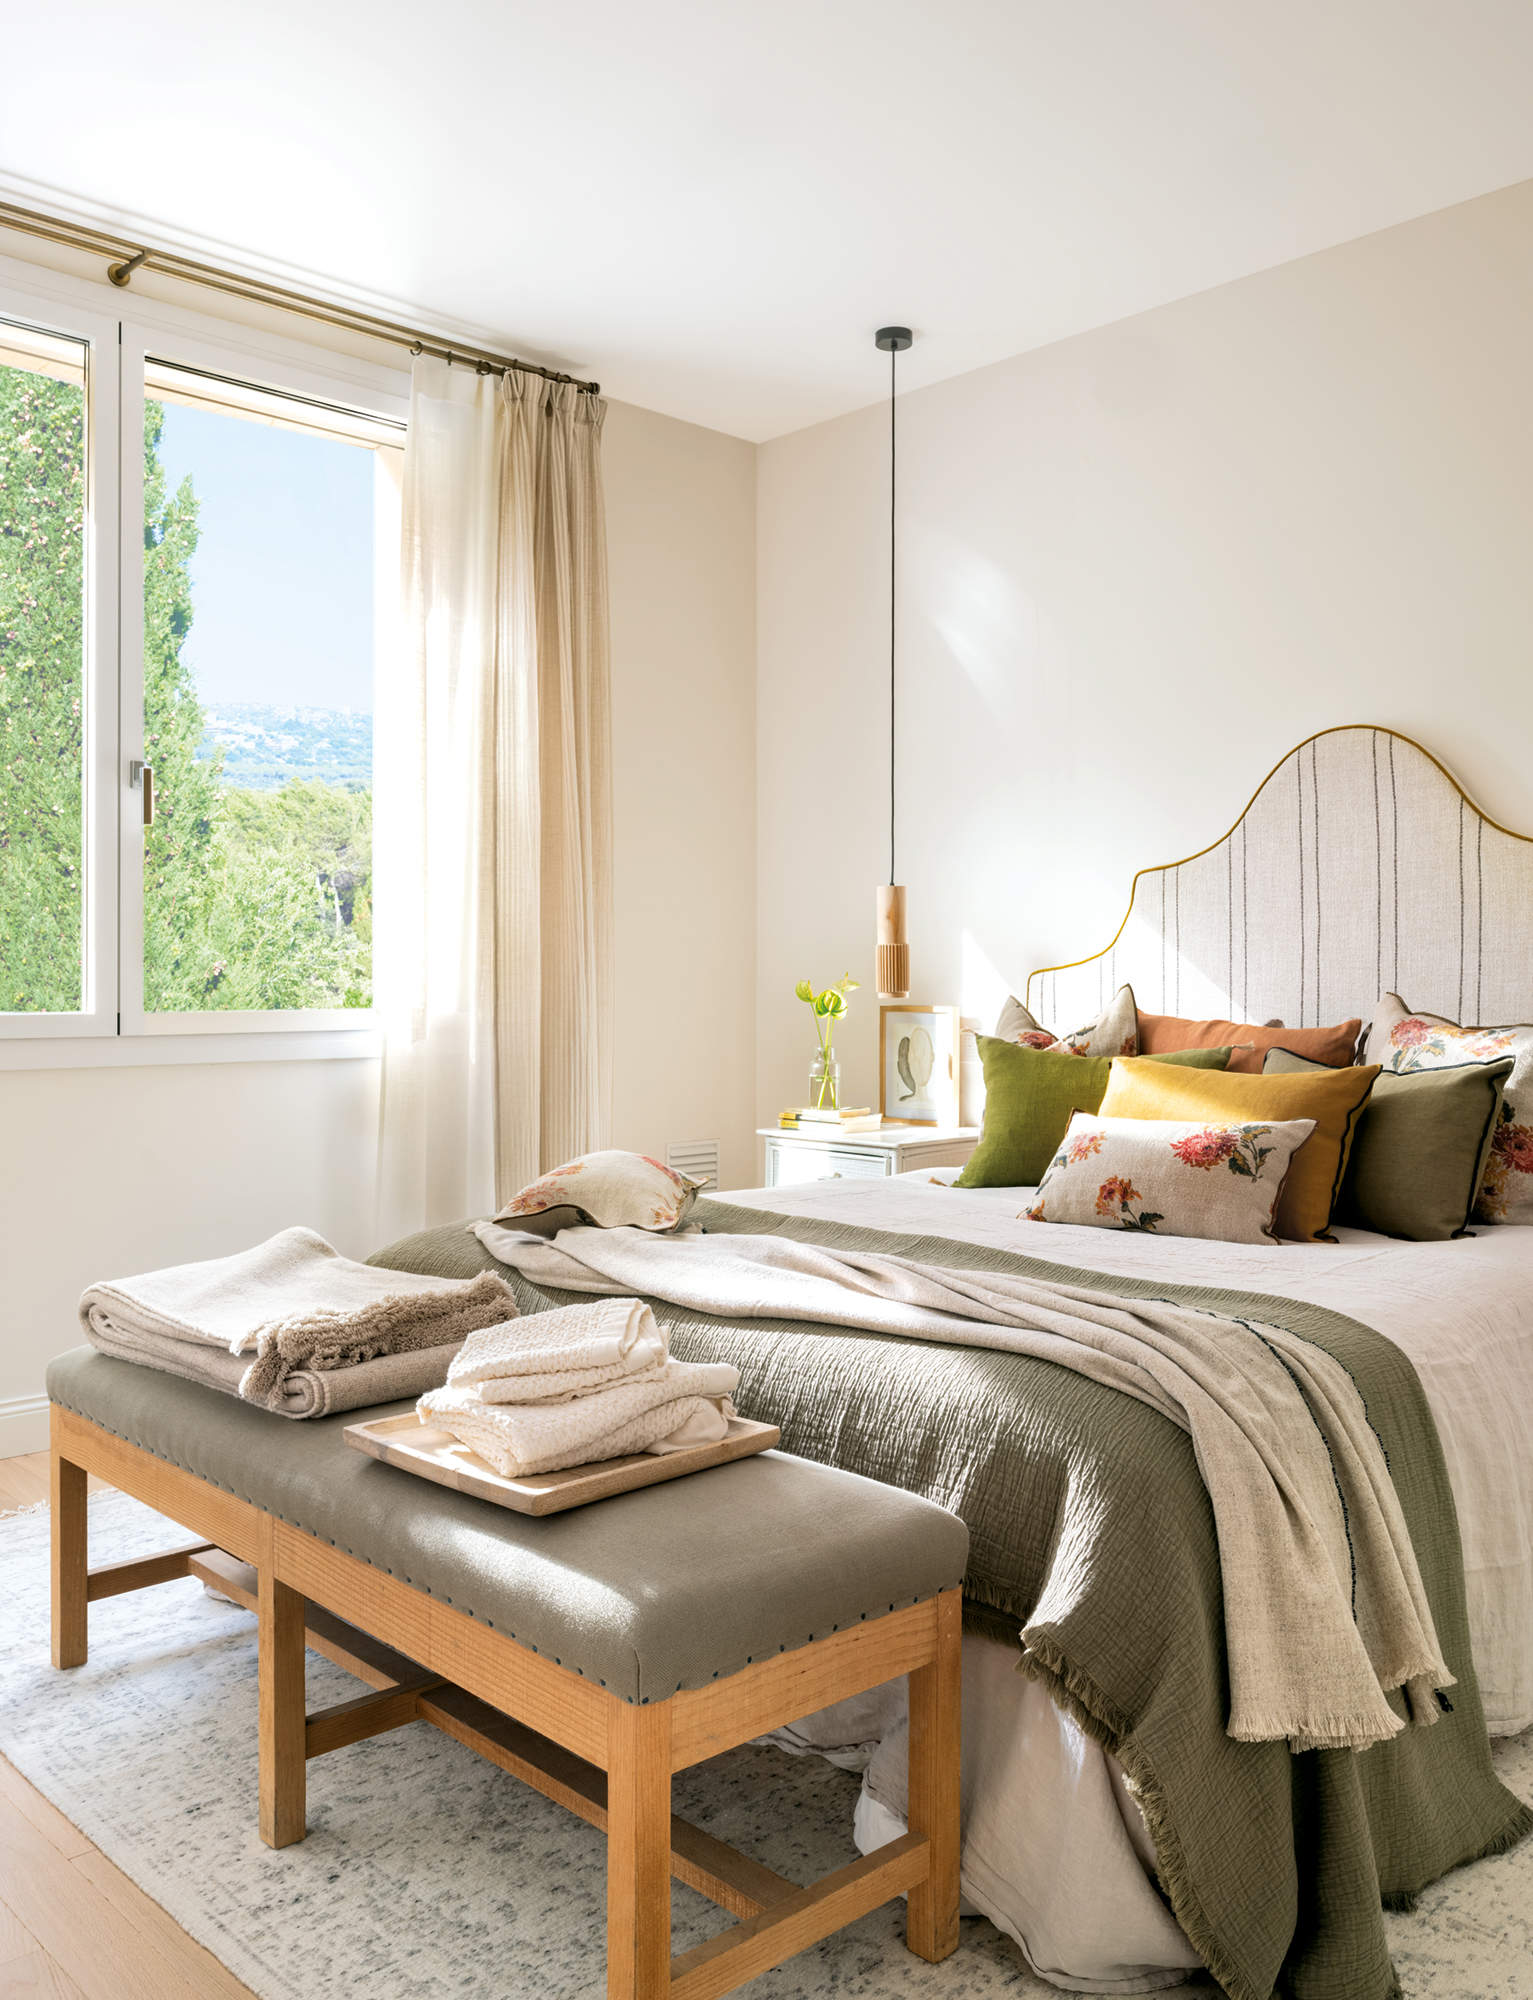 Dormitorio luminoso con ropa de cama verde y cabezal tapizado a rayas.